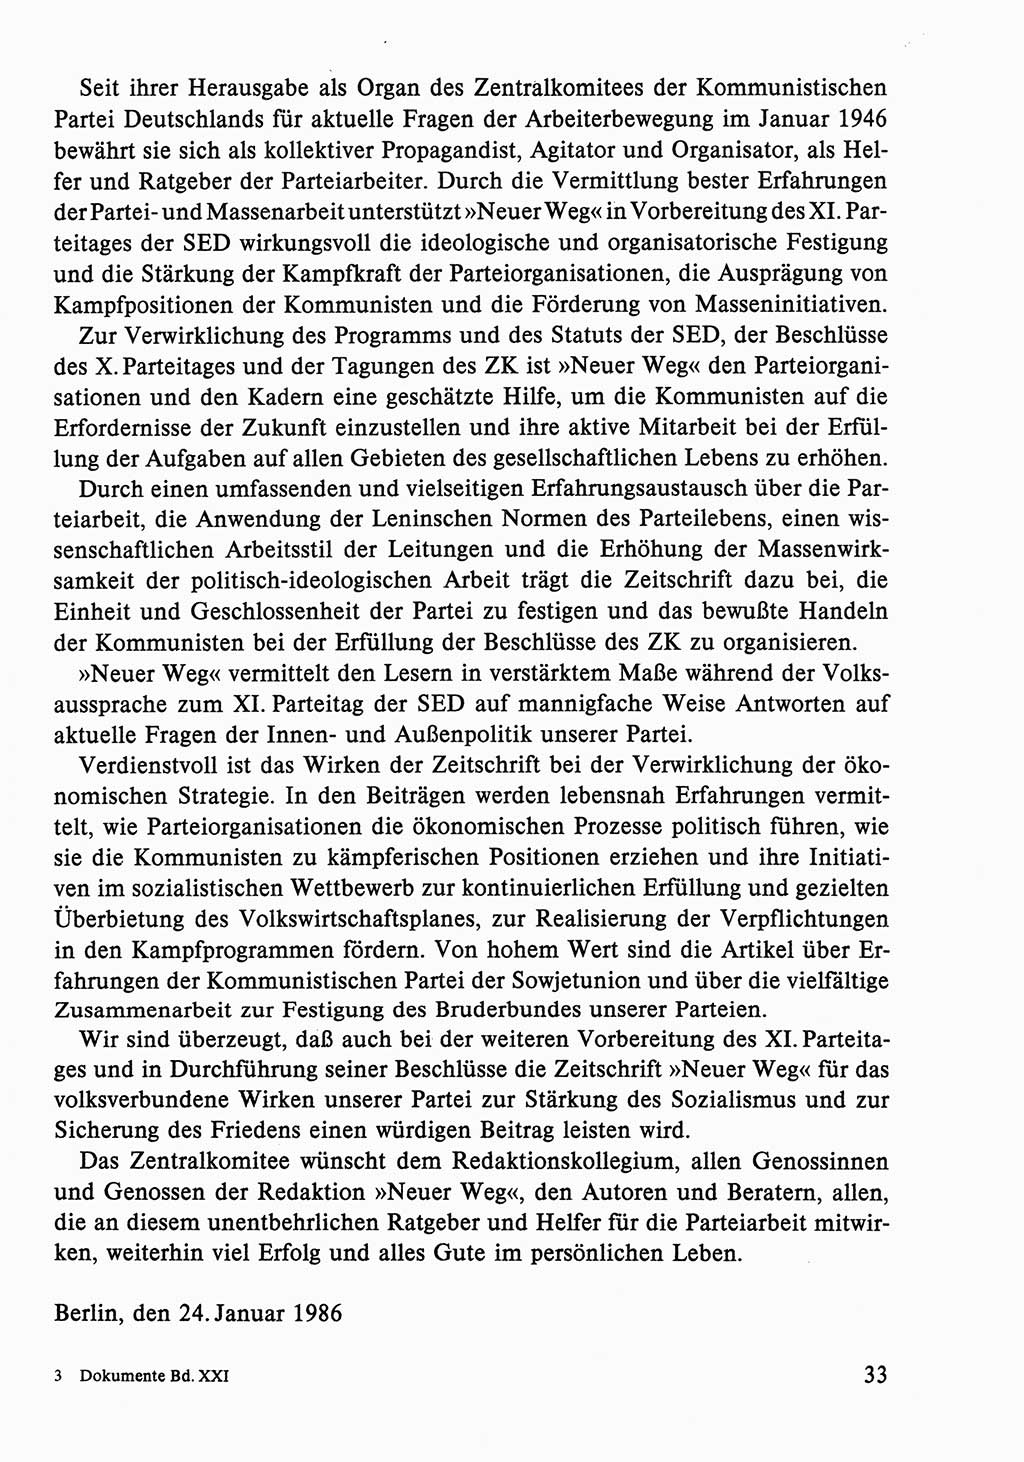 Dokumente der Sozialistischen Einheitspartei Deutschlands (SED) [Deutsche Demokratische Republik (DDR)] 1986-1987, Seite 33 (Dok. SED DDR 1986-1987, S. 33)